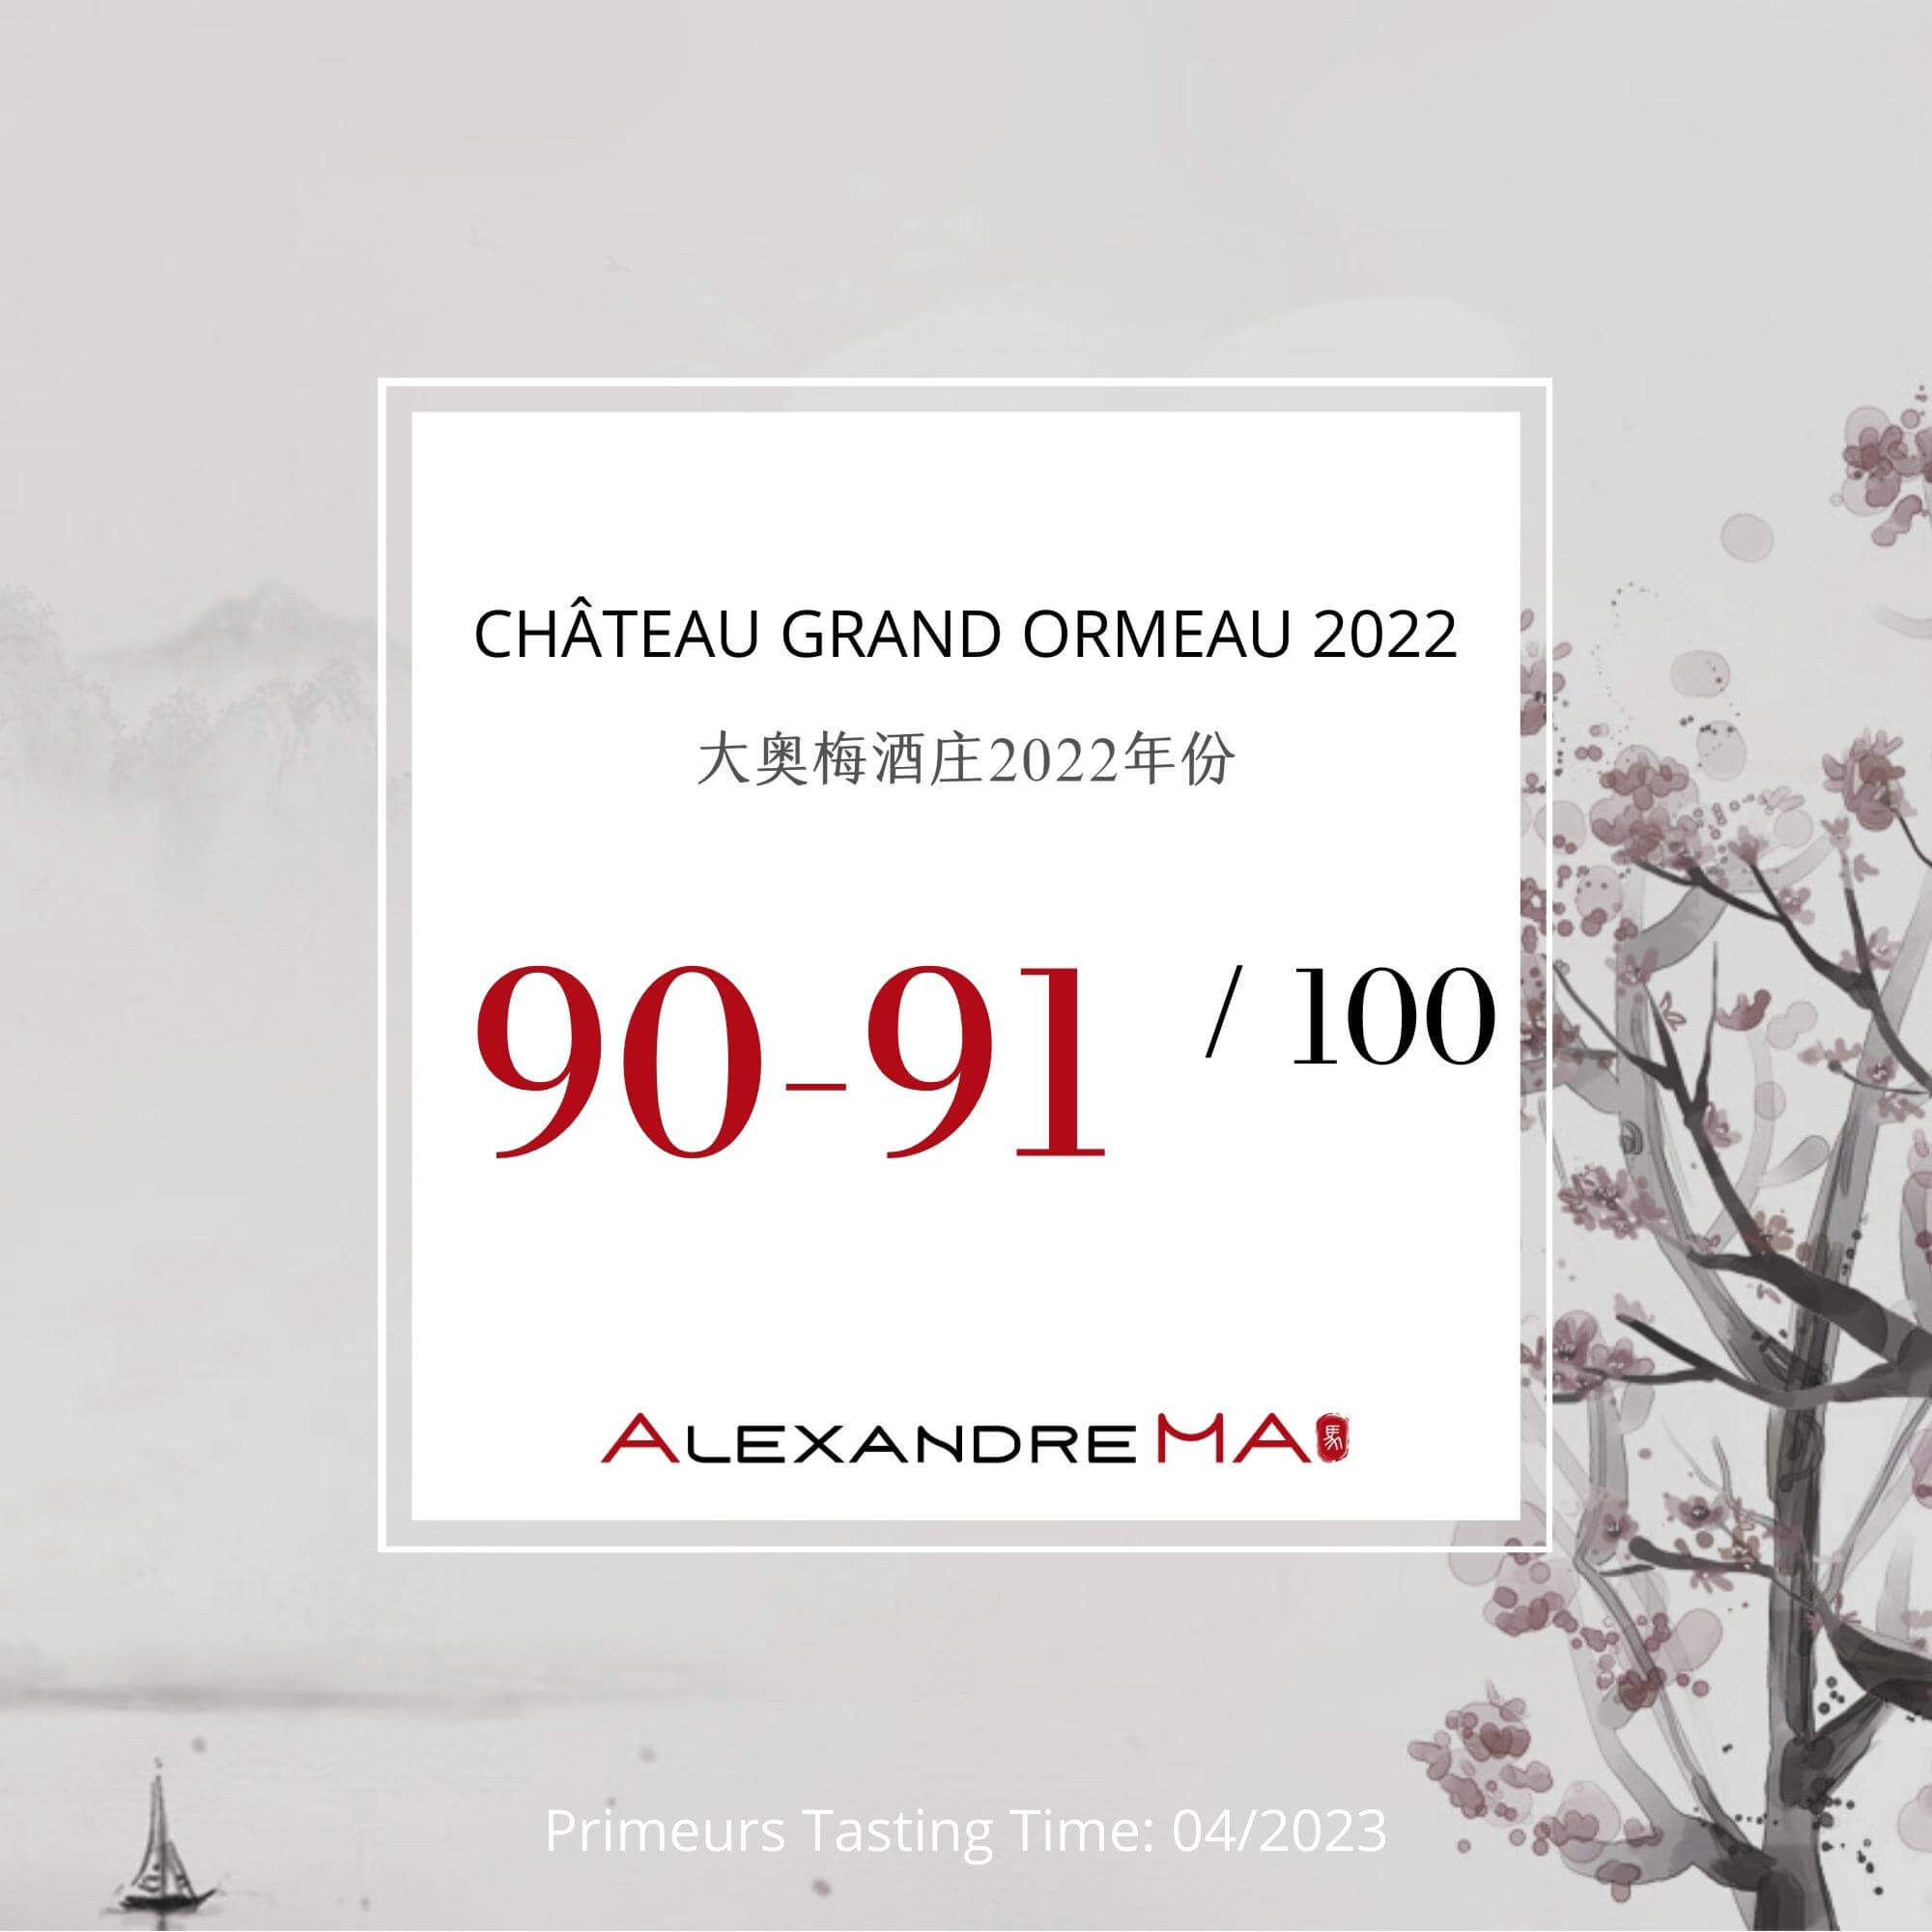 Château Grand Ormeau 2022 Primeurs 大奥梅酒庄 - Alexandre Ma